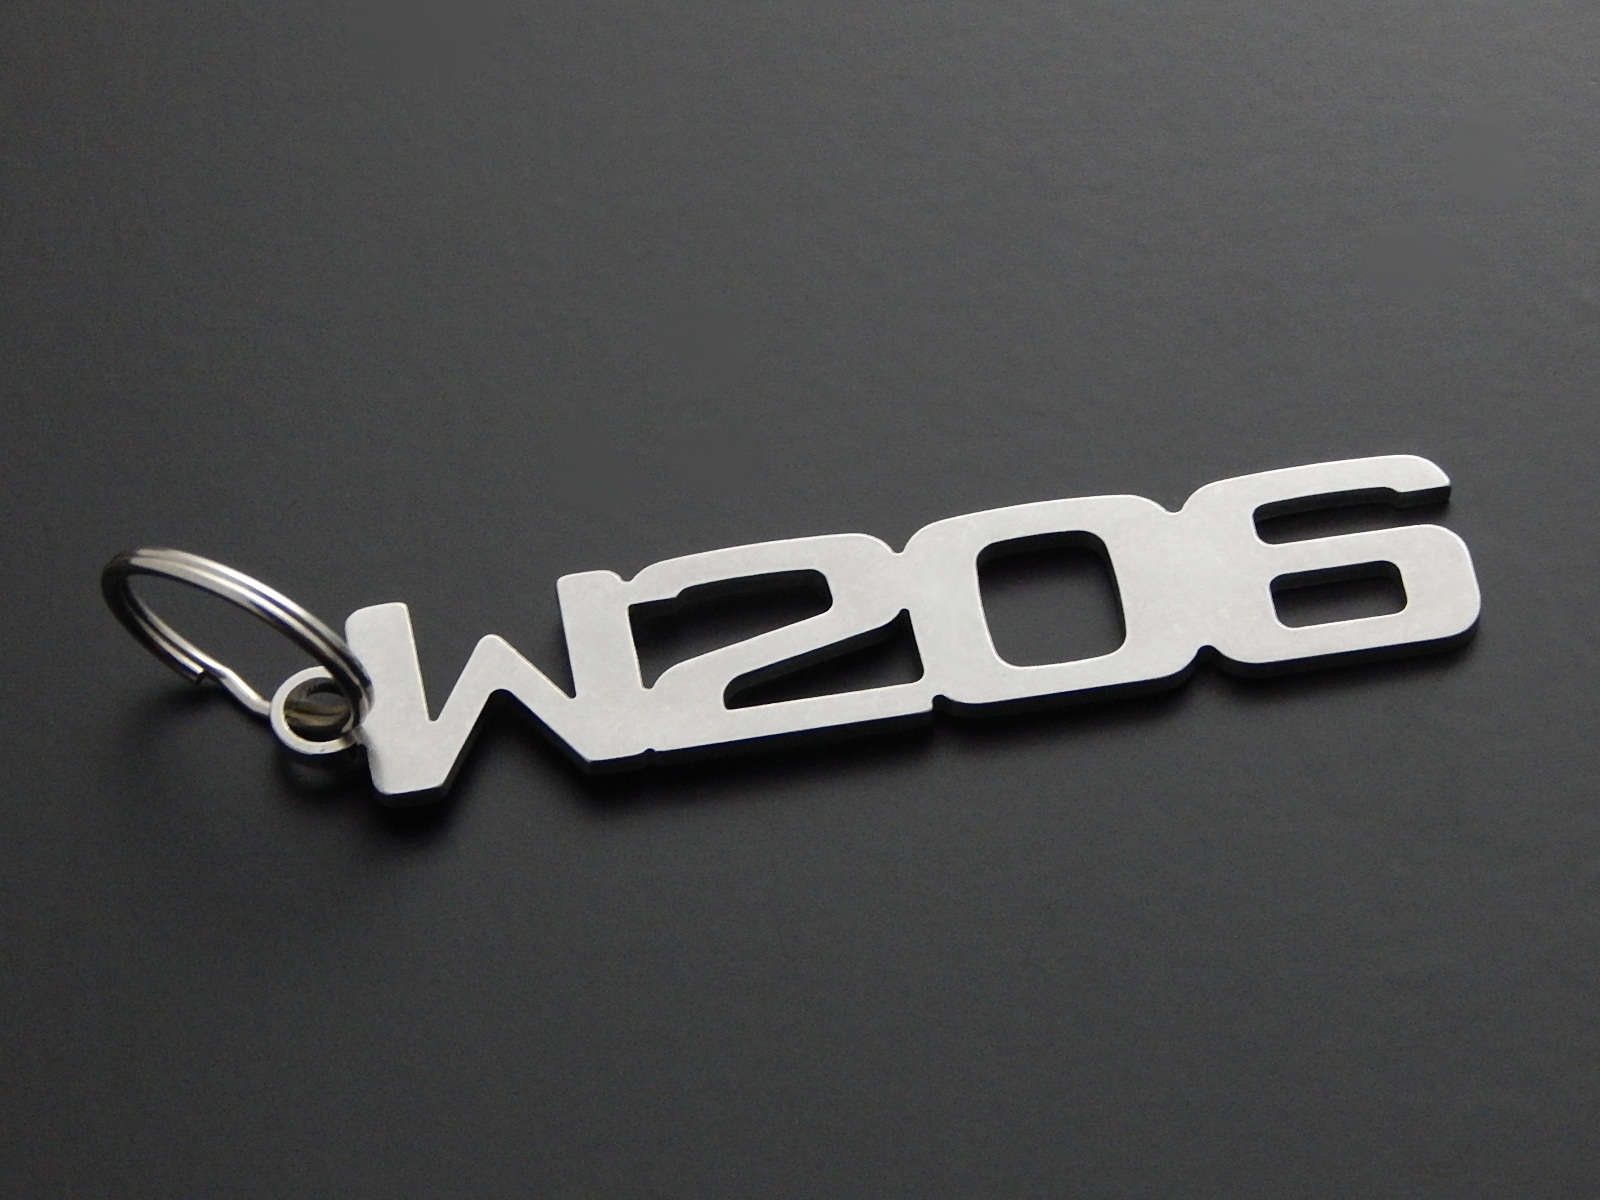 W206 - DisagrEE - keychain - Schlüsselanhänger